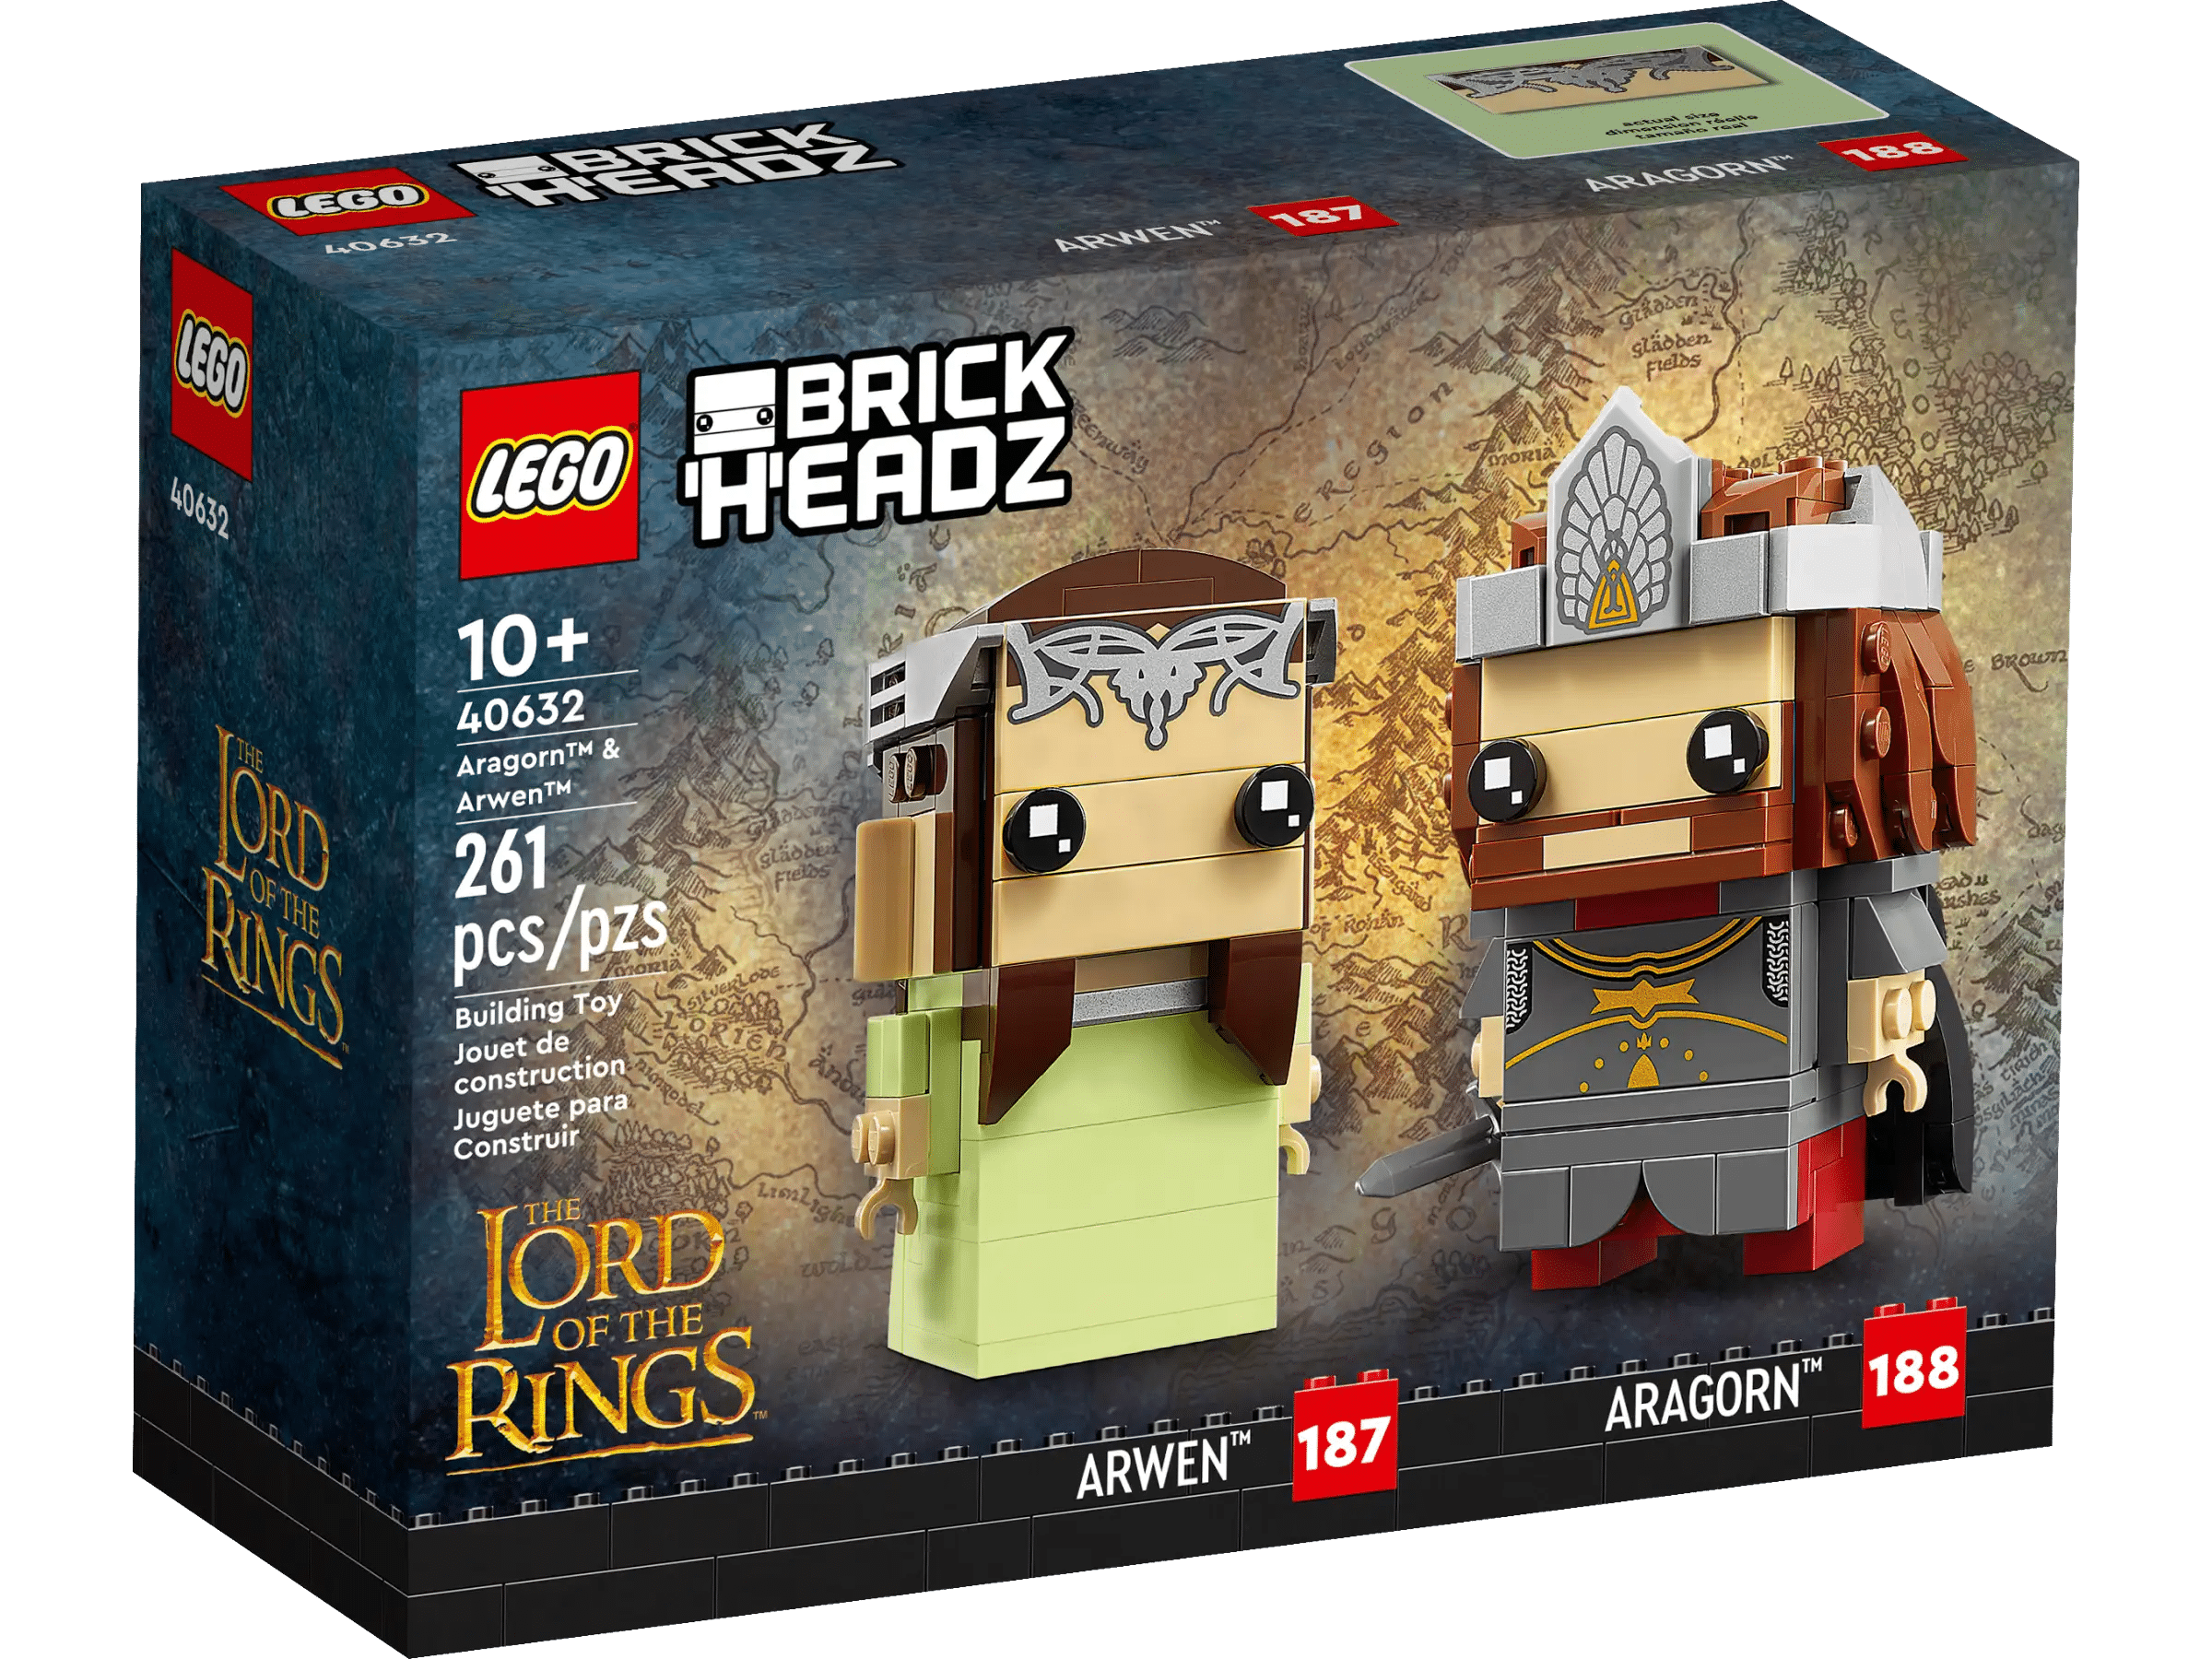 LEGO® BrickHeadz 40632 Aragorn und Arwen